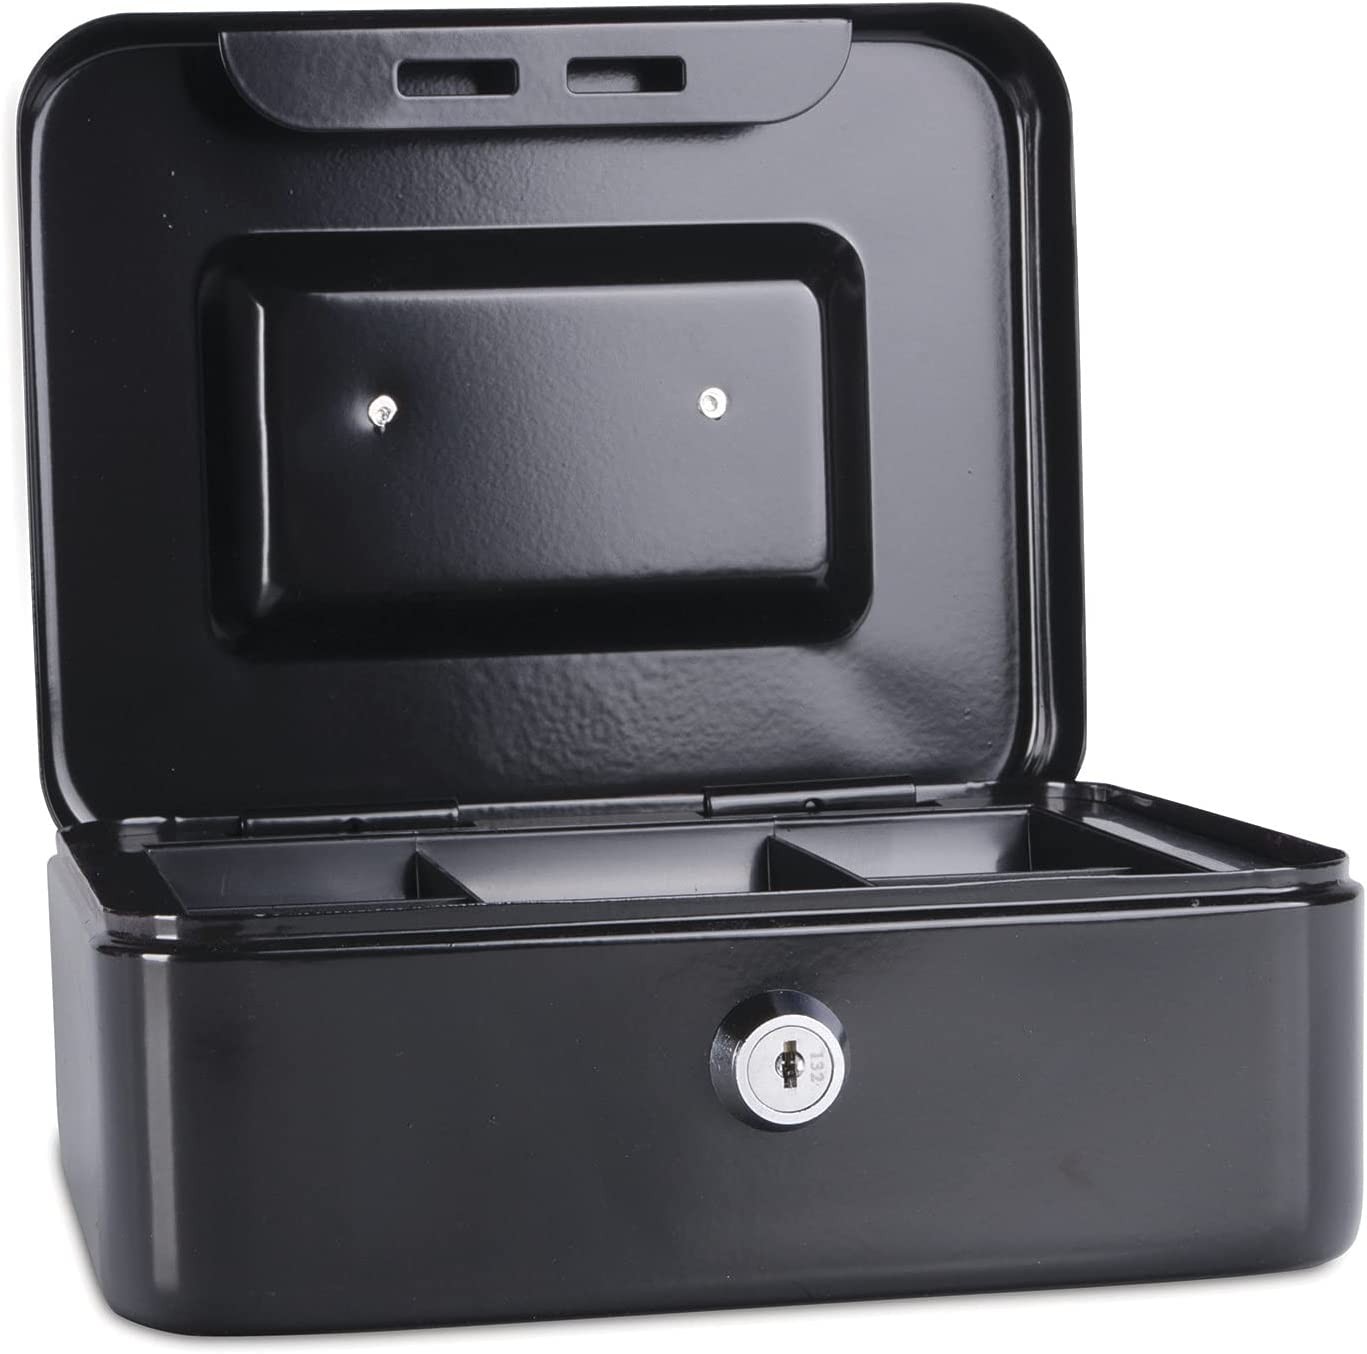 Caseta (cutie) metalica pentru bani, 200 x 160 x 90 mm, DONAU - negru